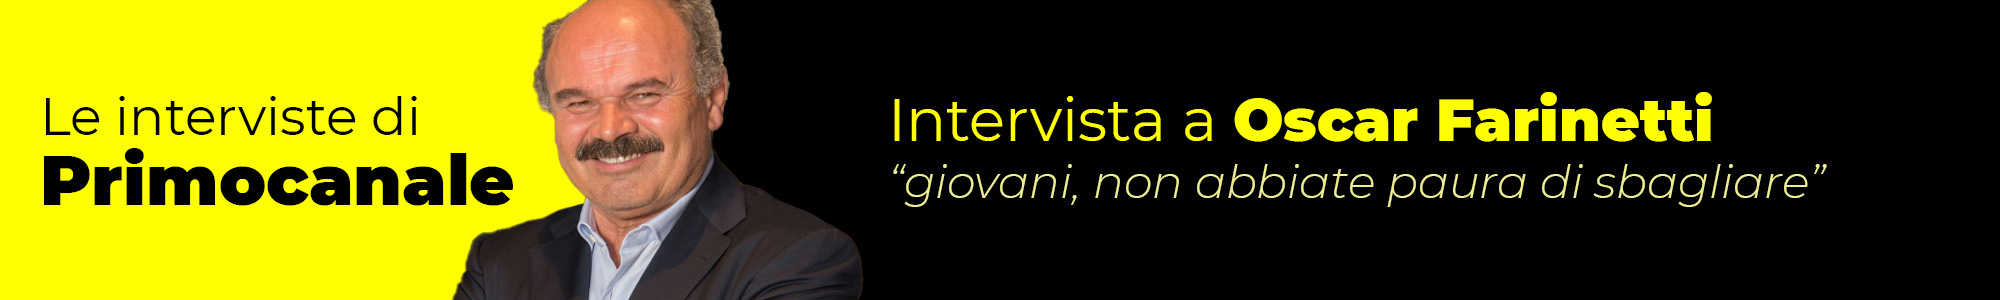 Banner - Intervista Farinetti